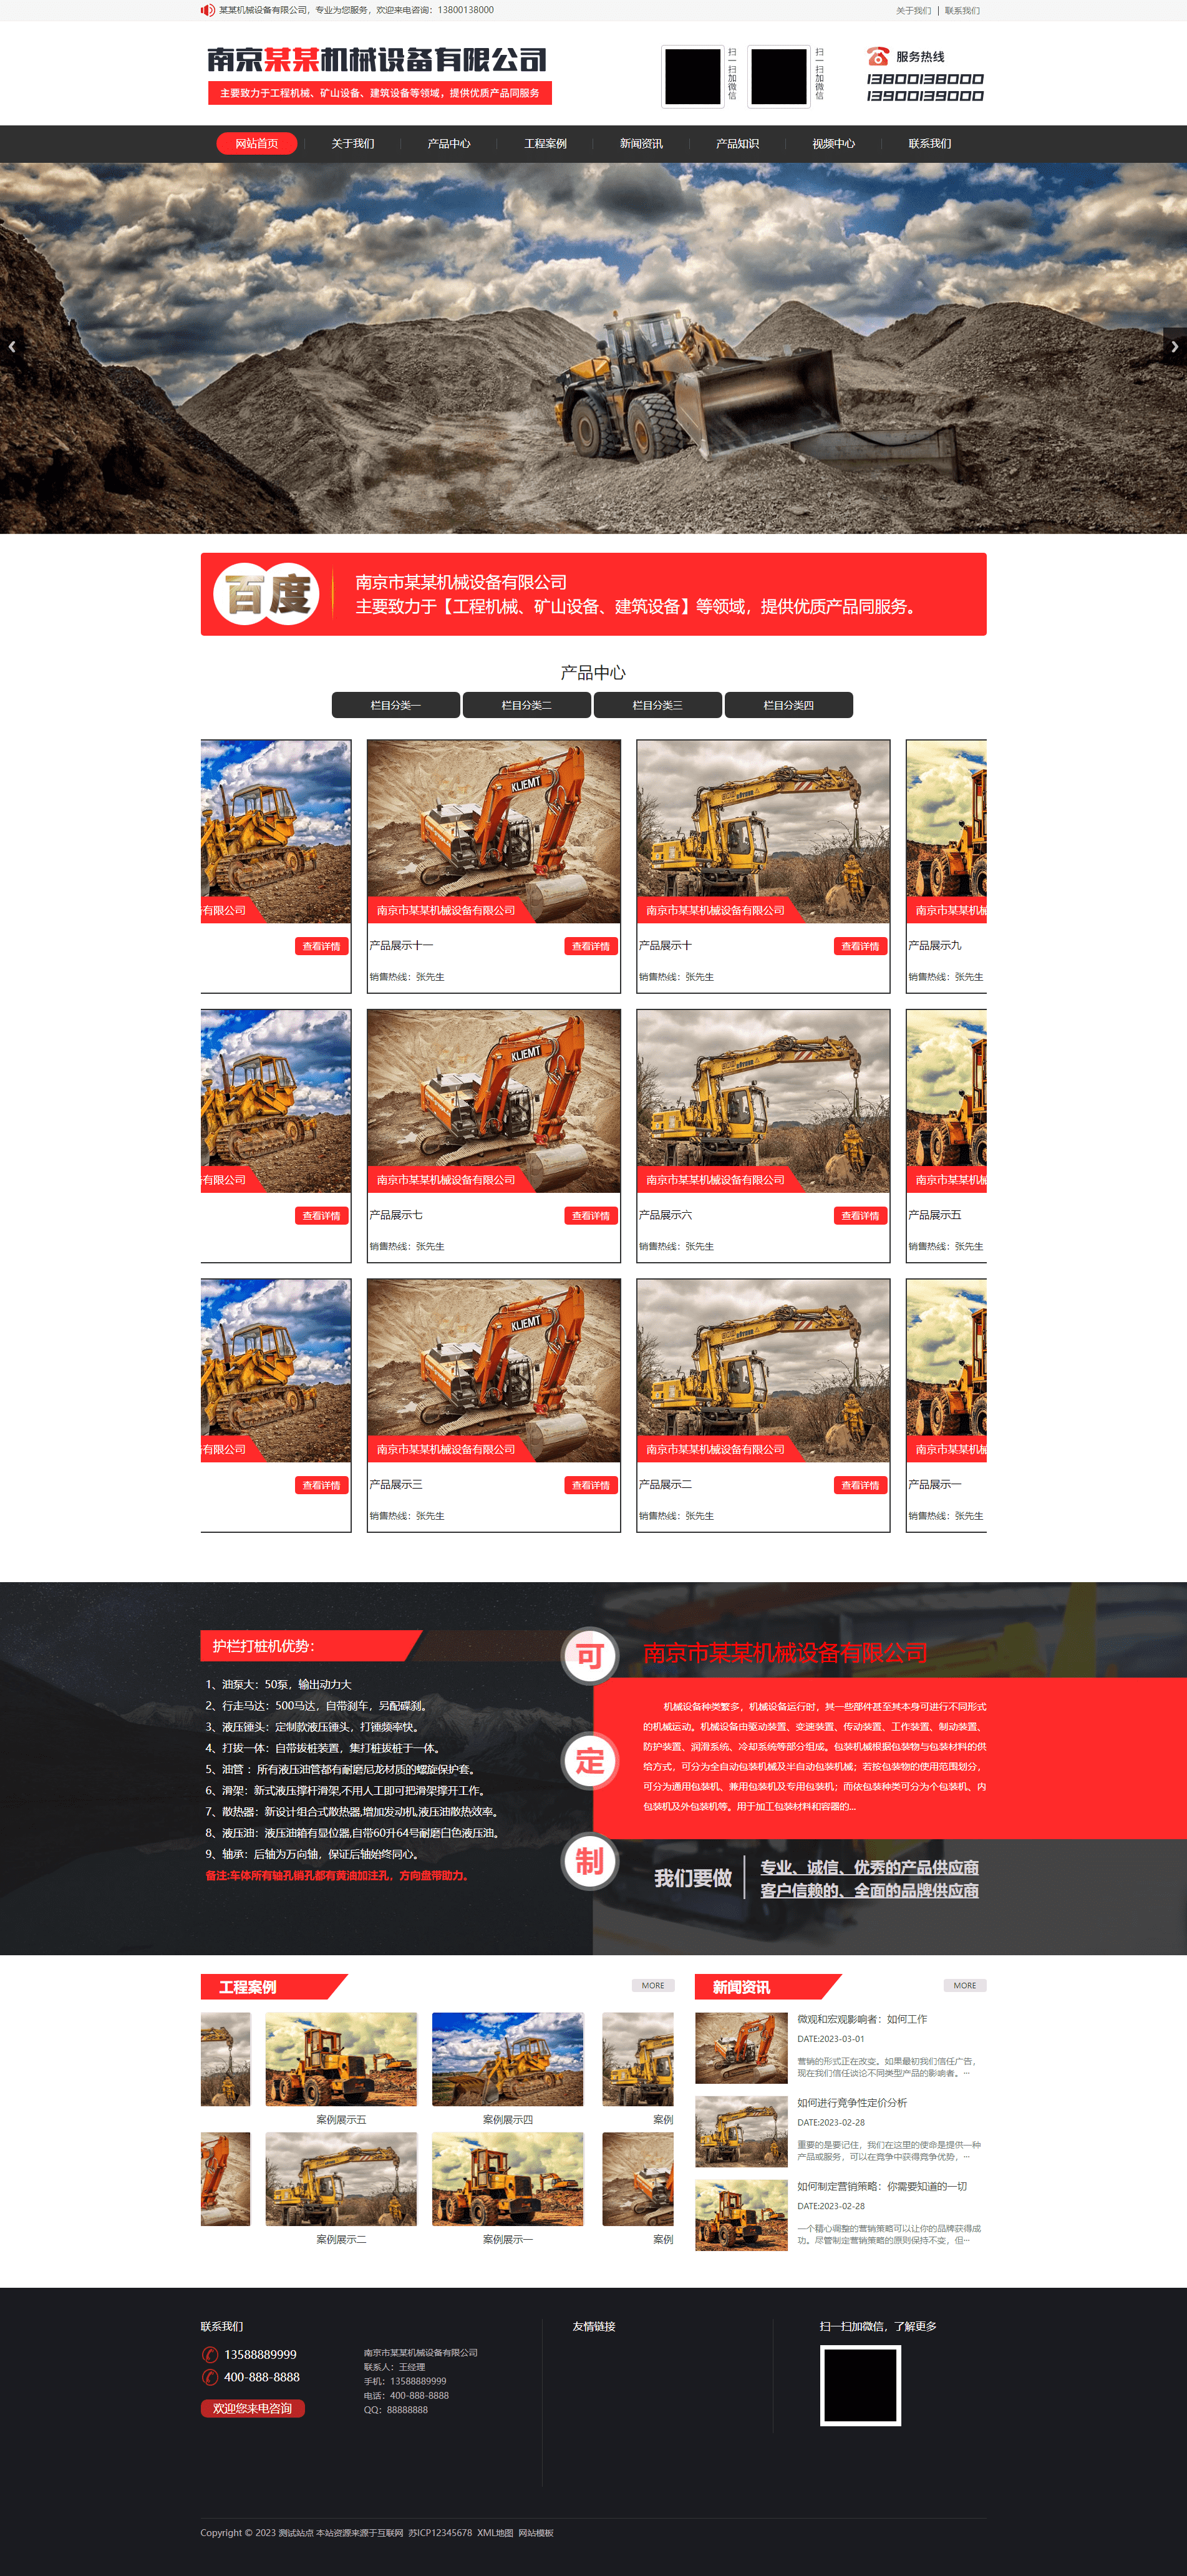 Pbootcms工程机械建筑设备矿山机械网站模板